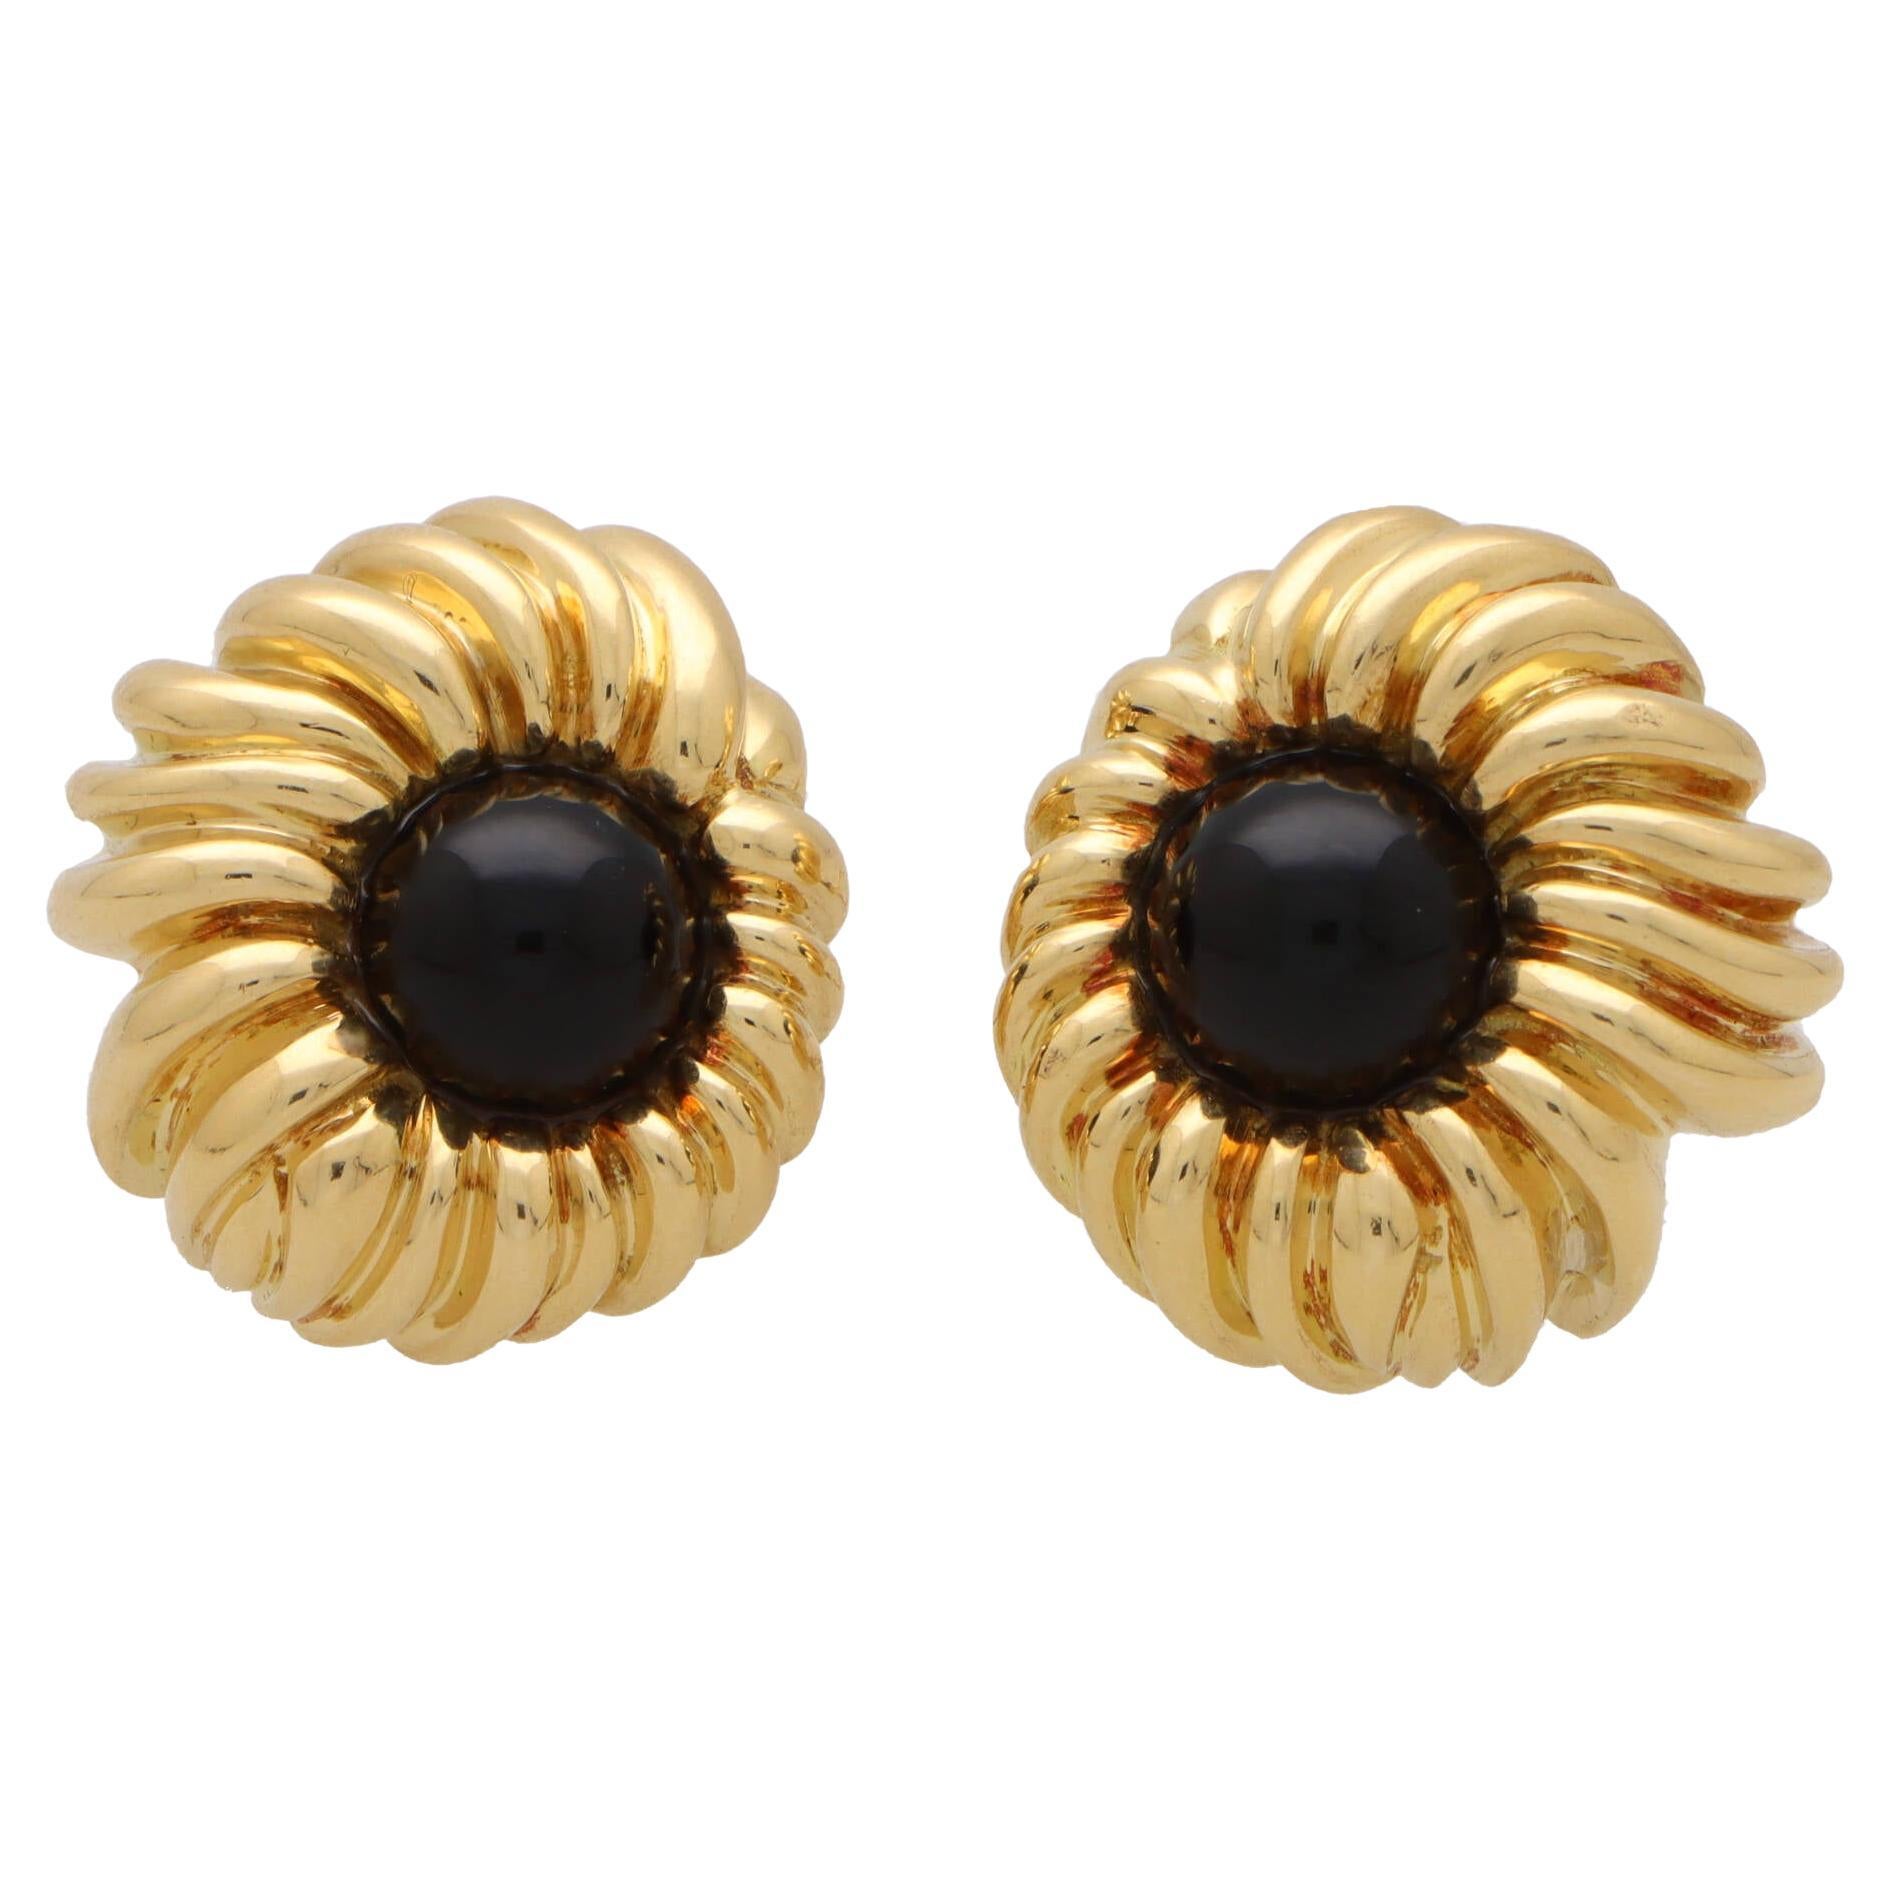  Weinlese Tiffany & Co. Onyx-Blumen-Ohrringe aus 18 Karat Gelbgold